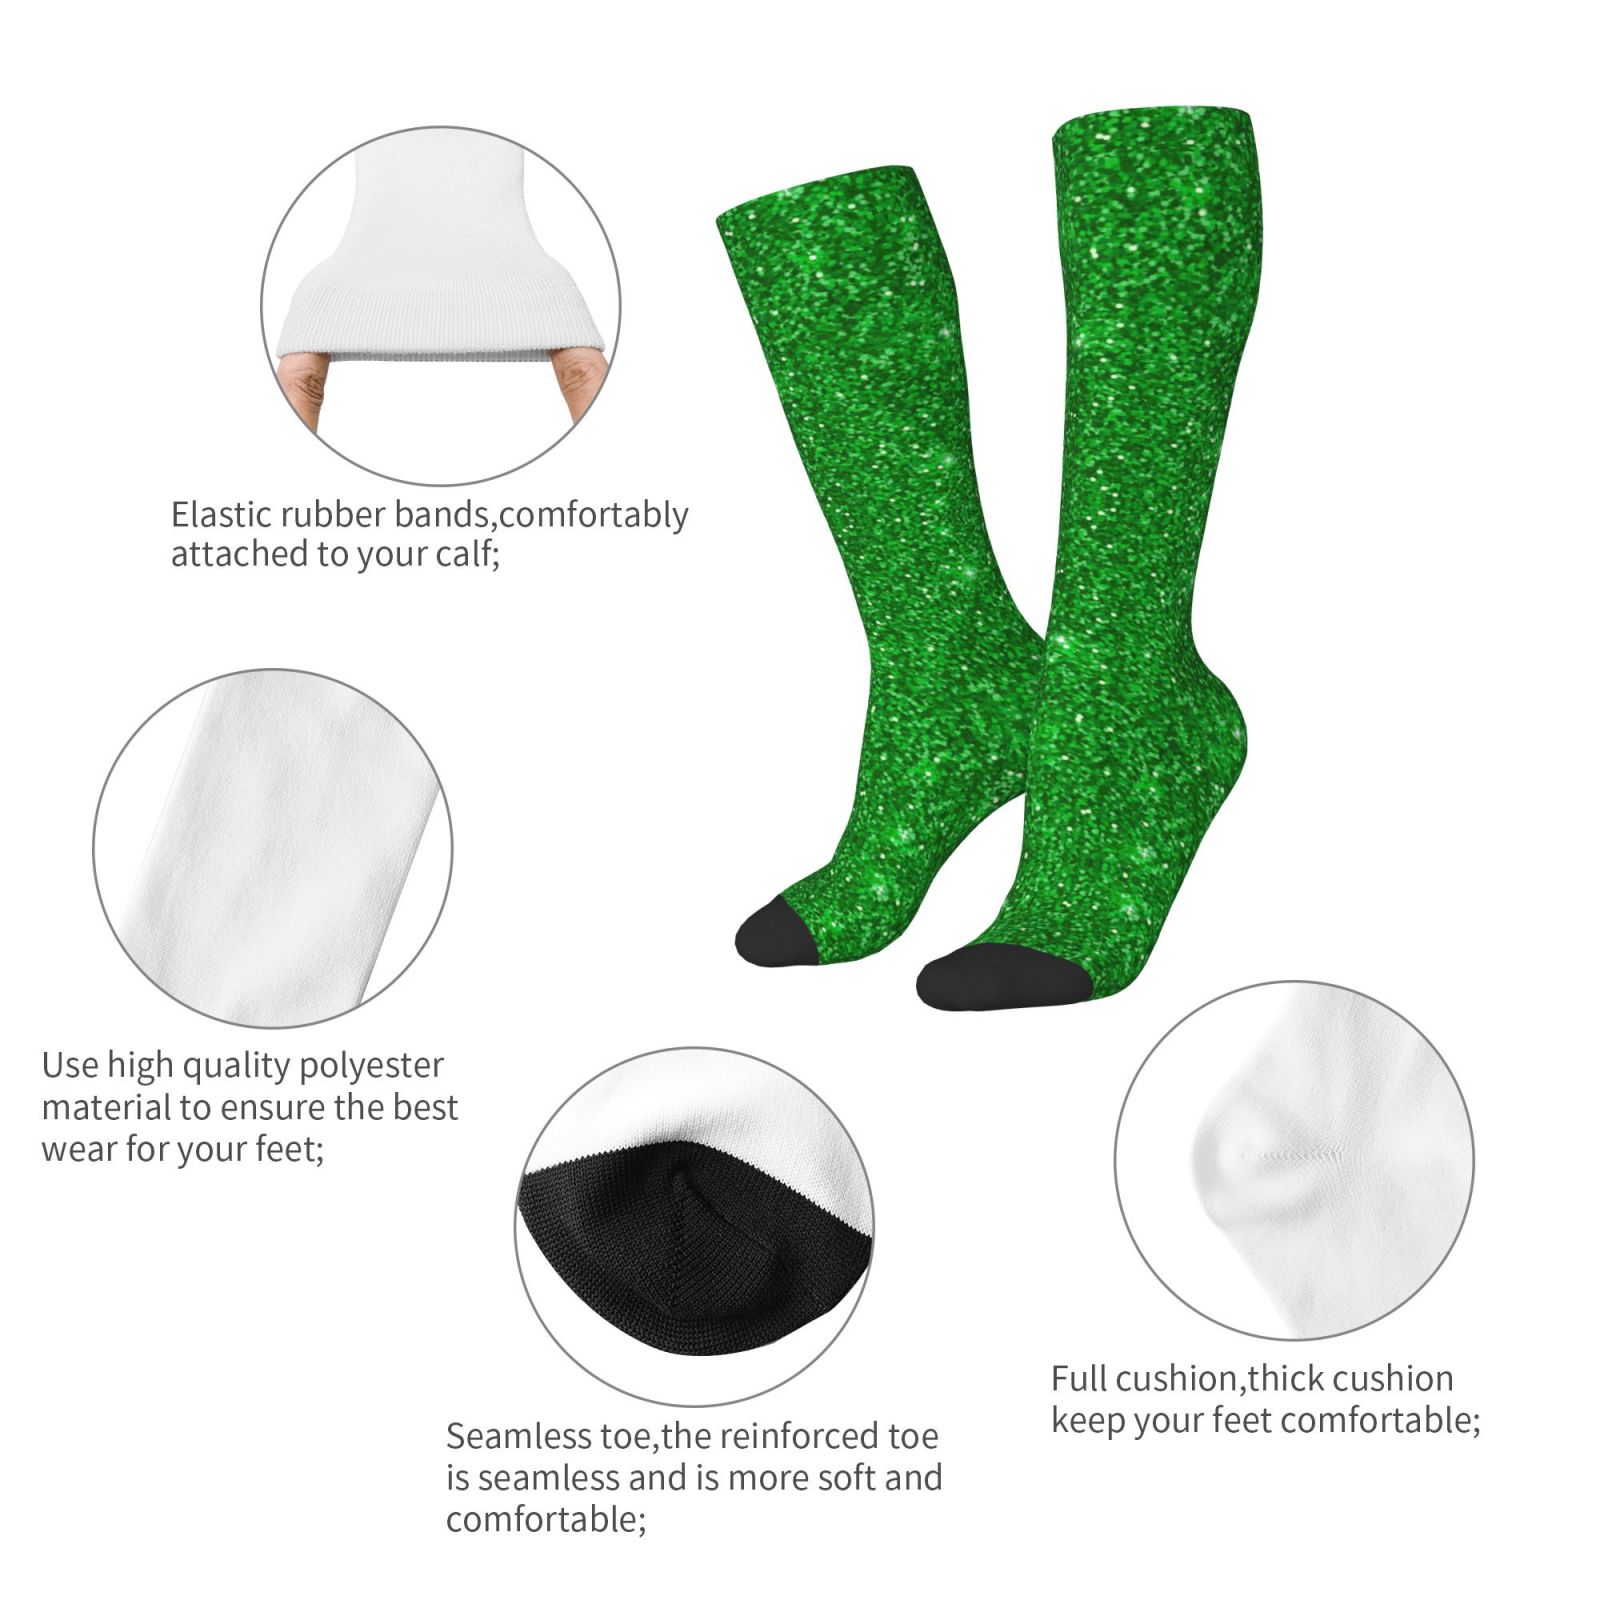 Easygdp Green Glitter Soccer Socks Sport Knee High Socks Calf ...